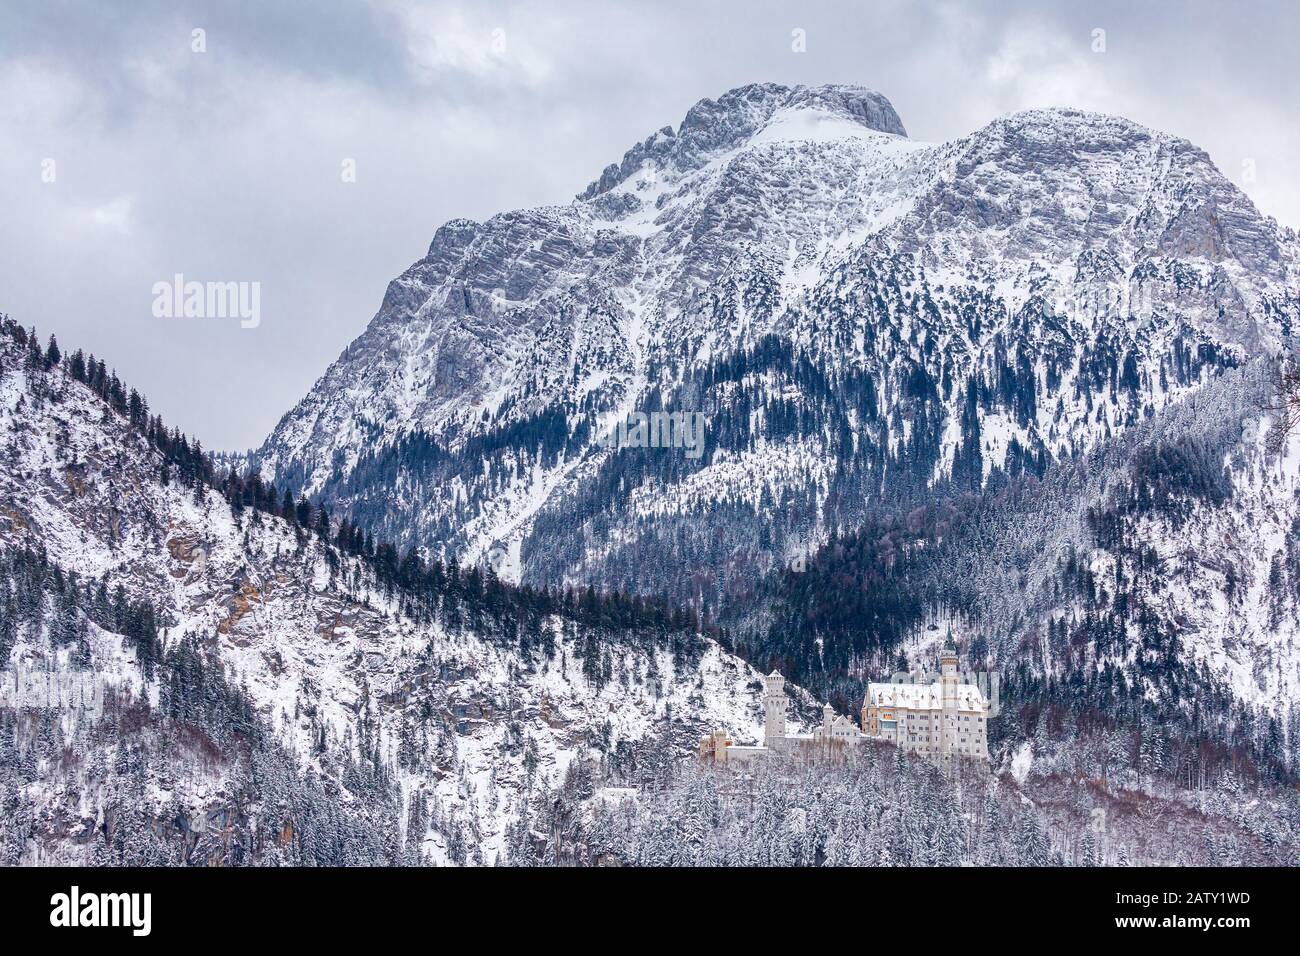 Winter auf Schloss Neuschwanstein, bei Hohenschwangau, Bayern, Deutschland. Stockfoto